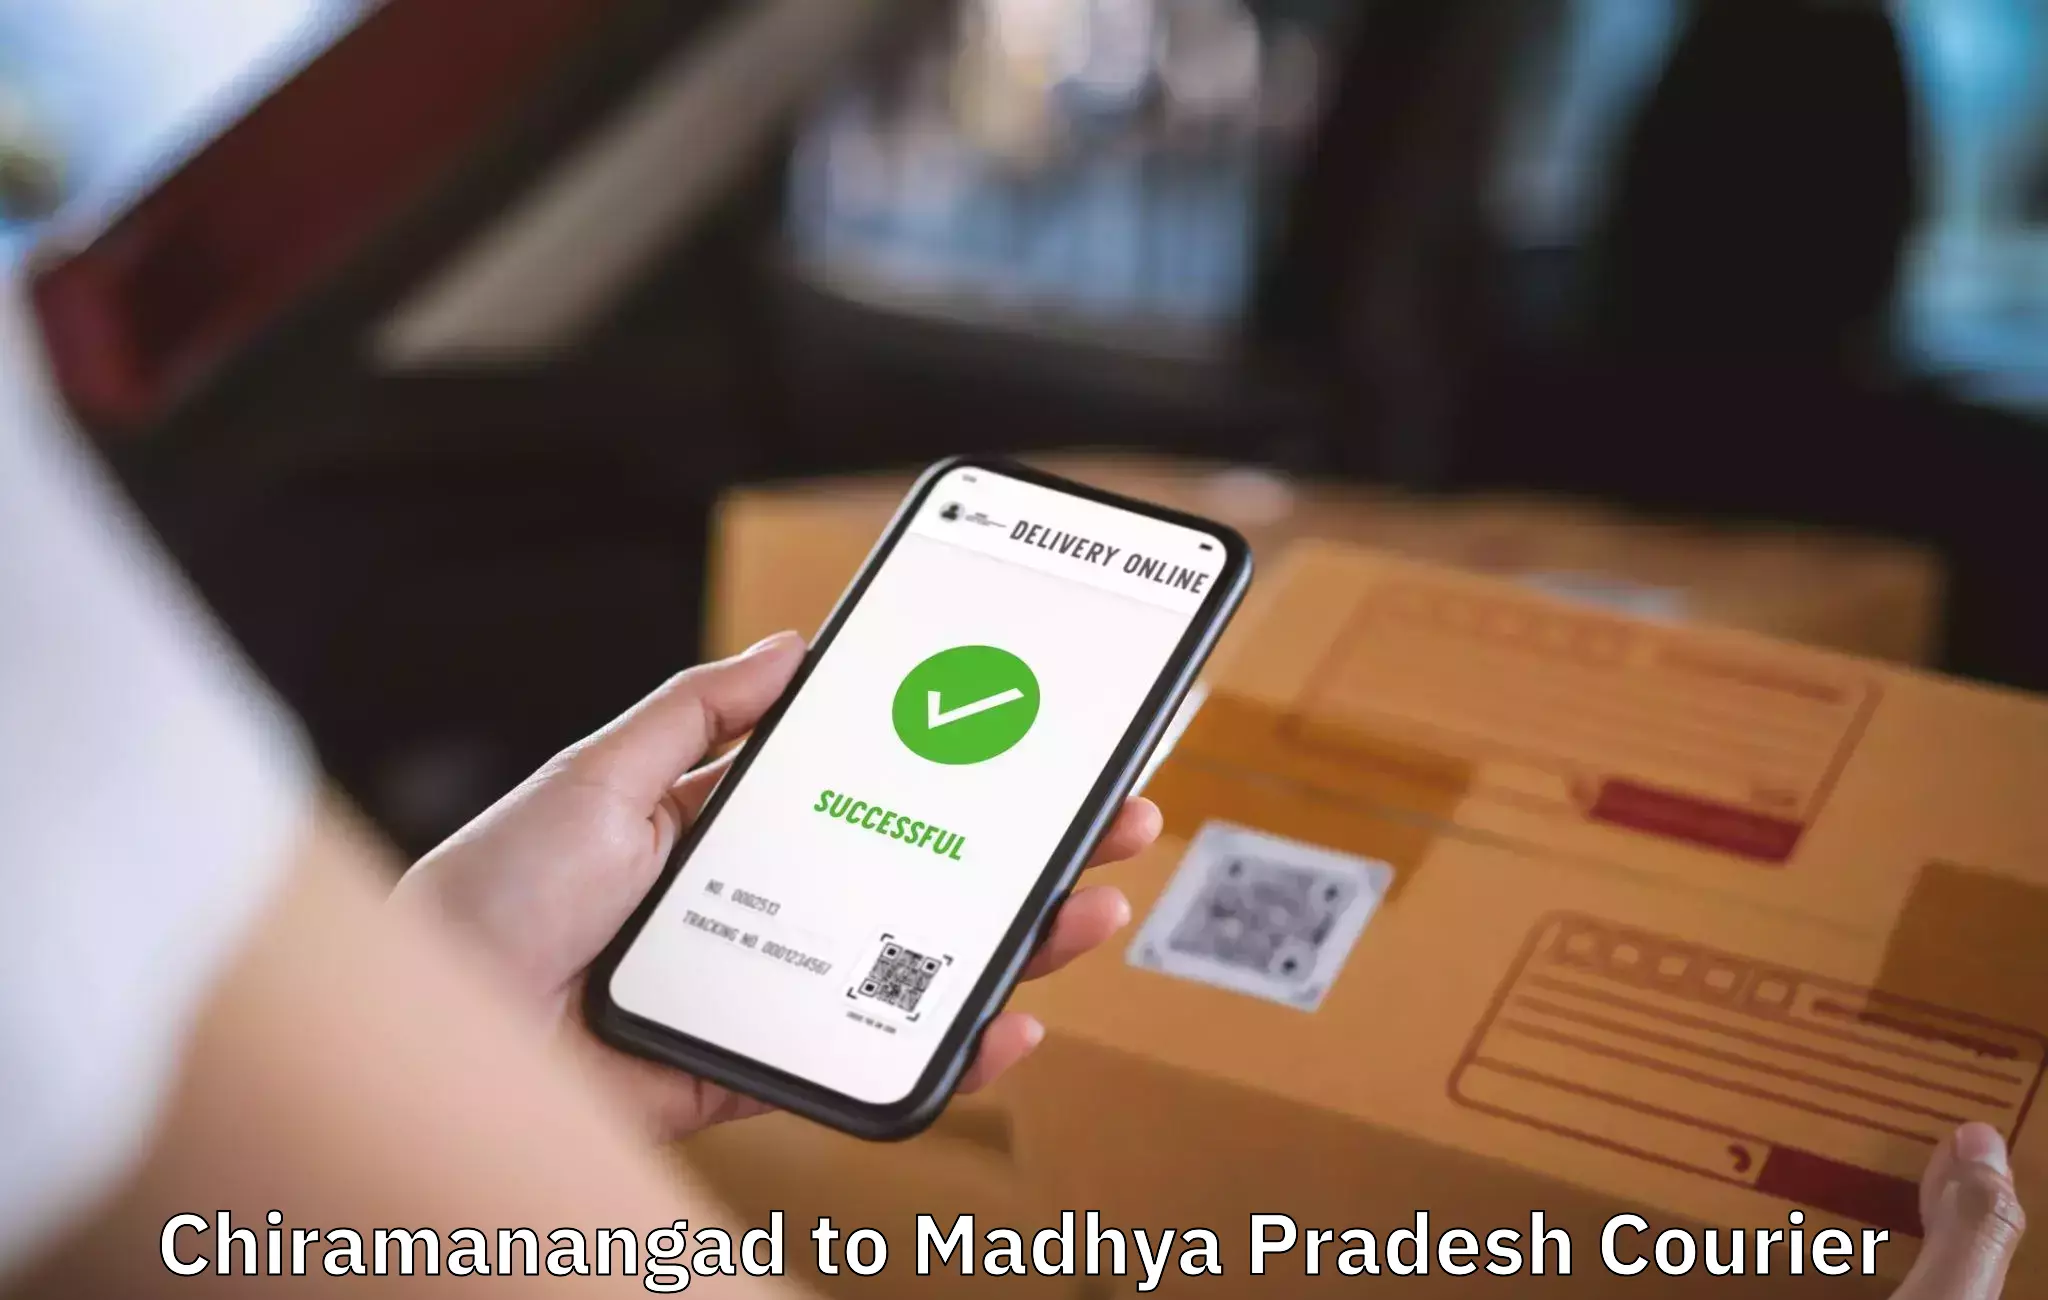 Personalized moving and storage Chiramanangad to Madhya Pradesh